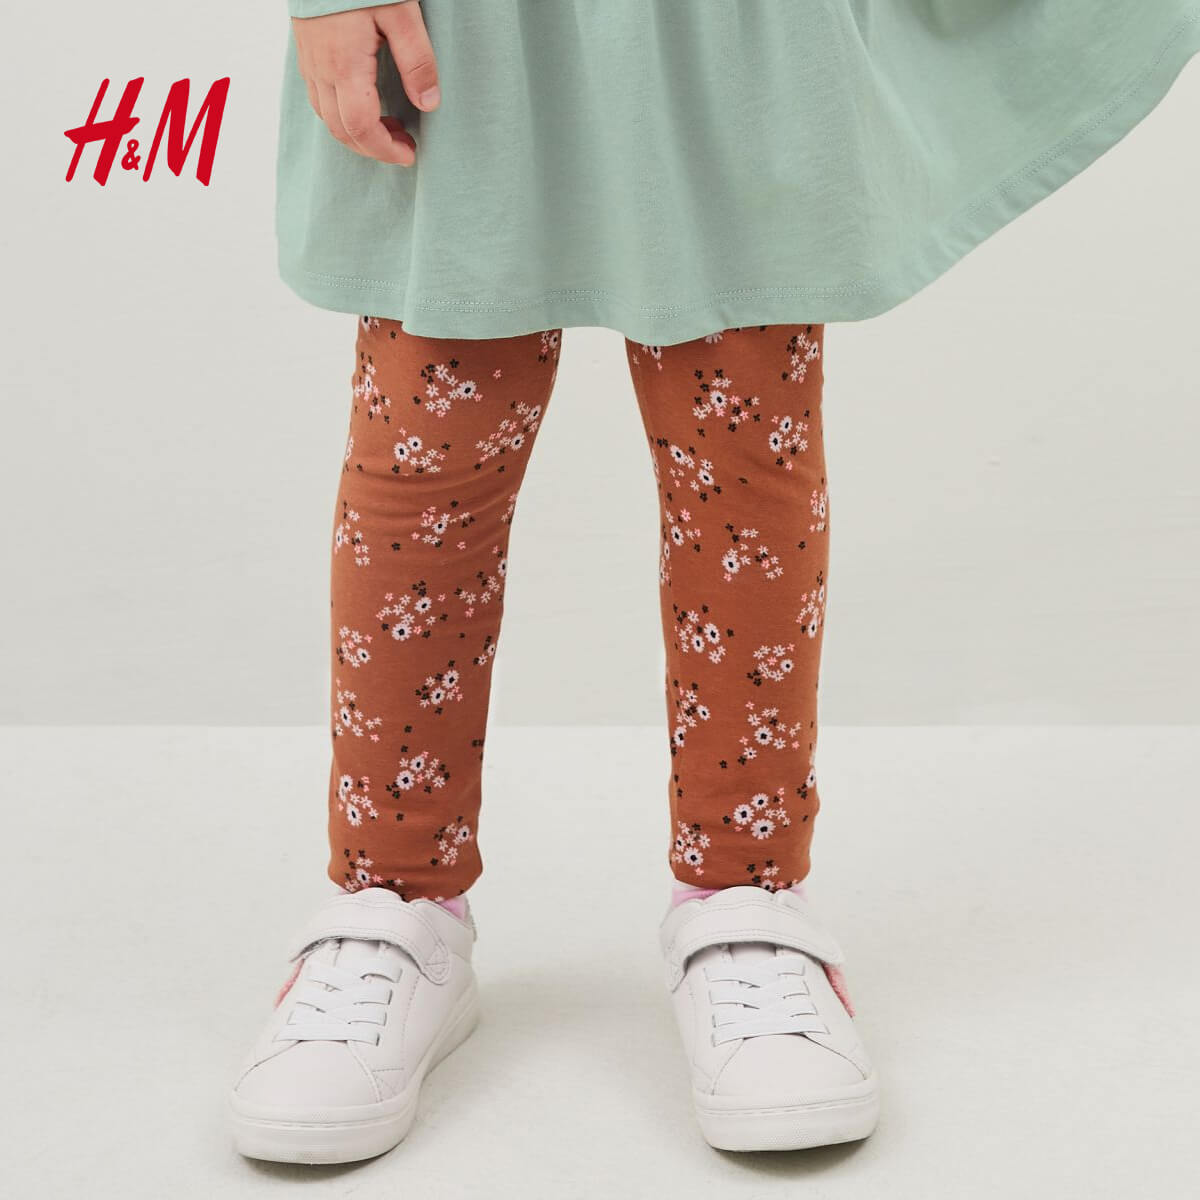 H&M BROWN FLORAL PRINTED LEGGINGS - Peekaboo